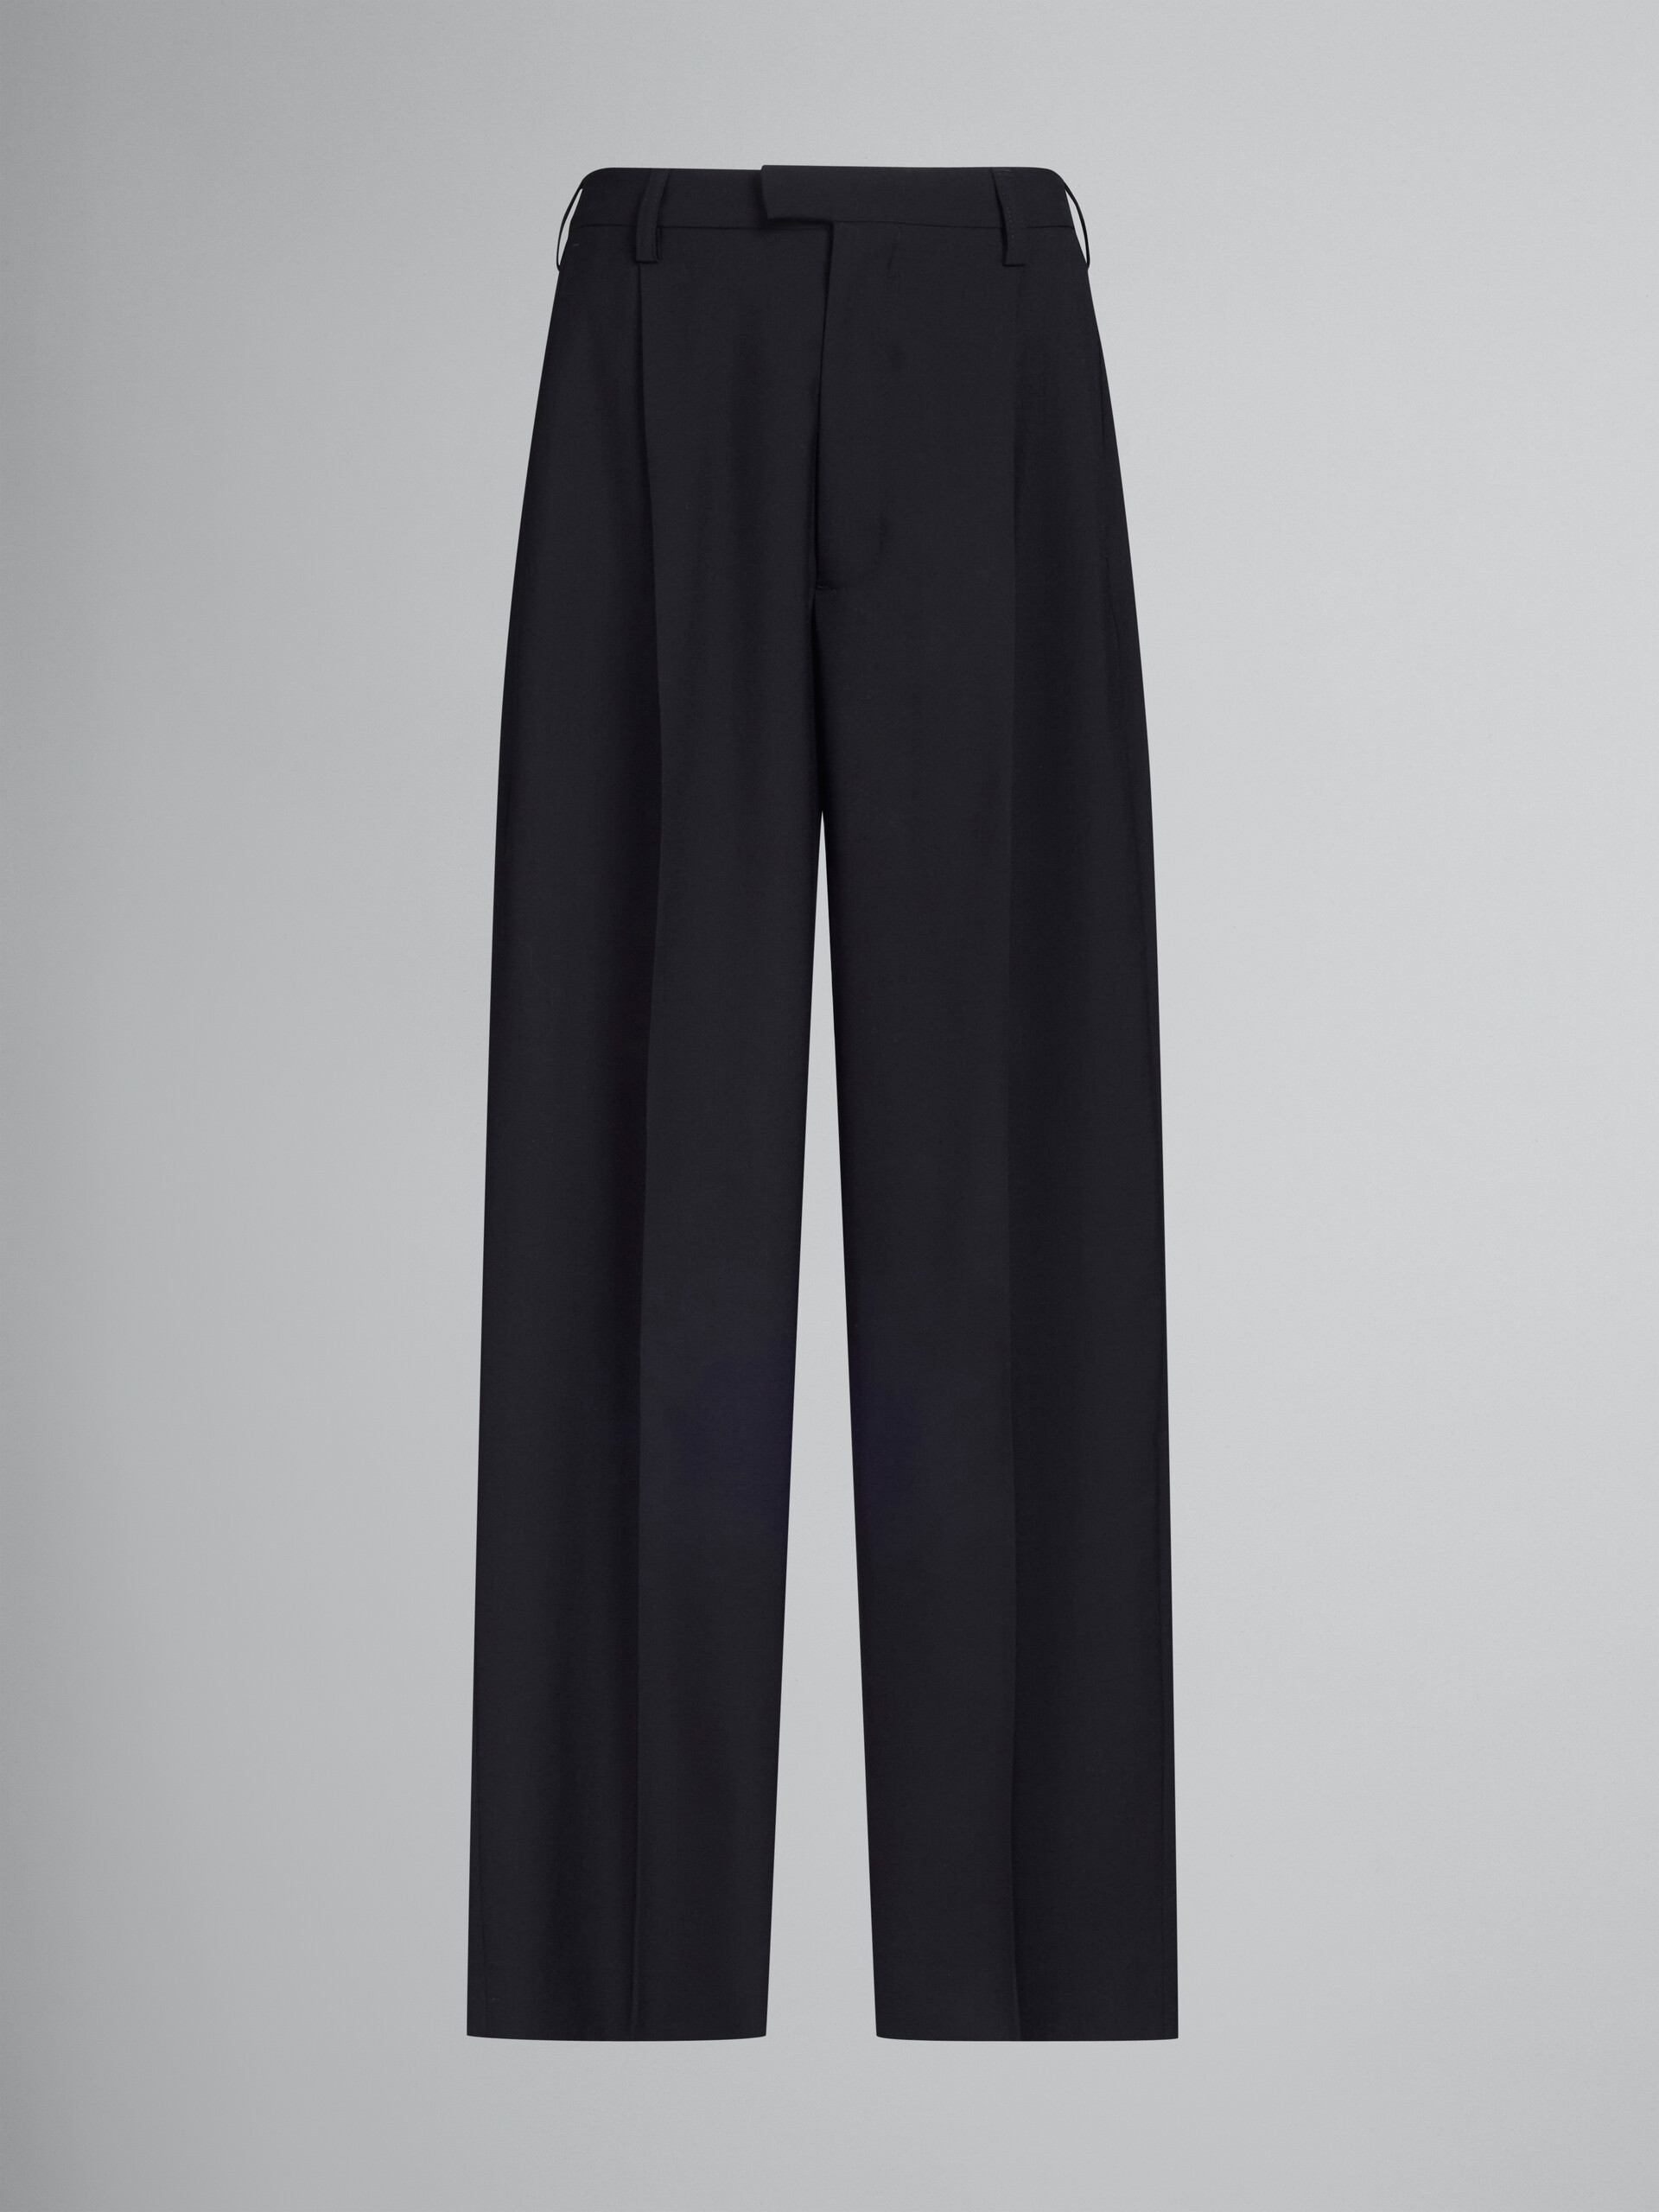 Schwarze Anzughose aus Tropenwolle - Hosen - Image 1